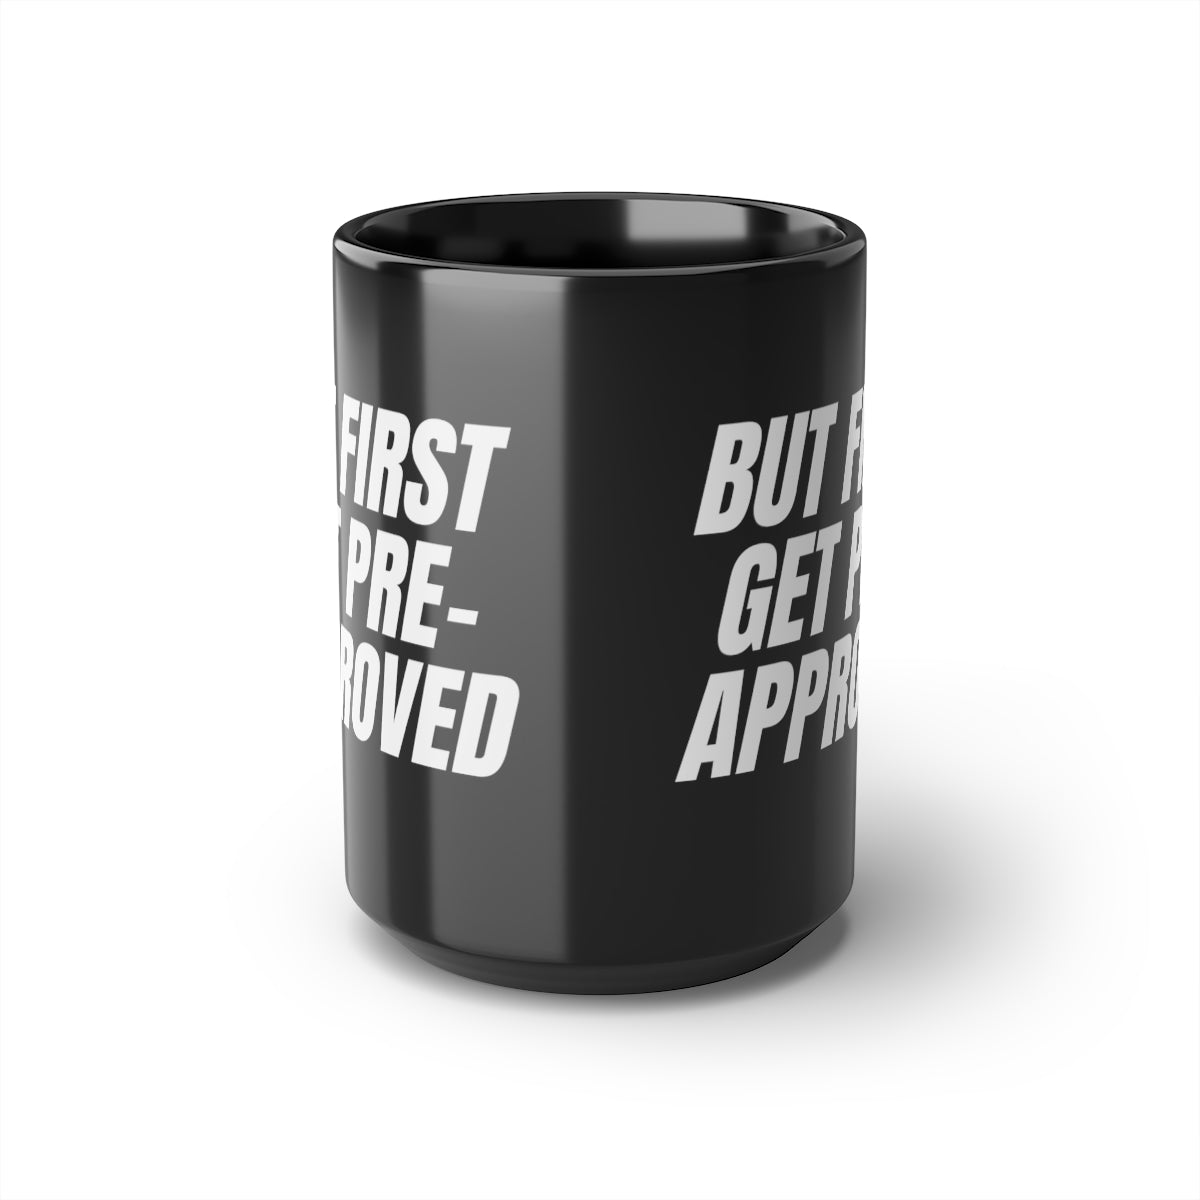 Mug - Get Pre-Approved